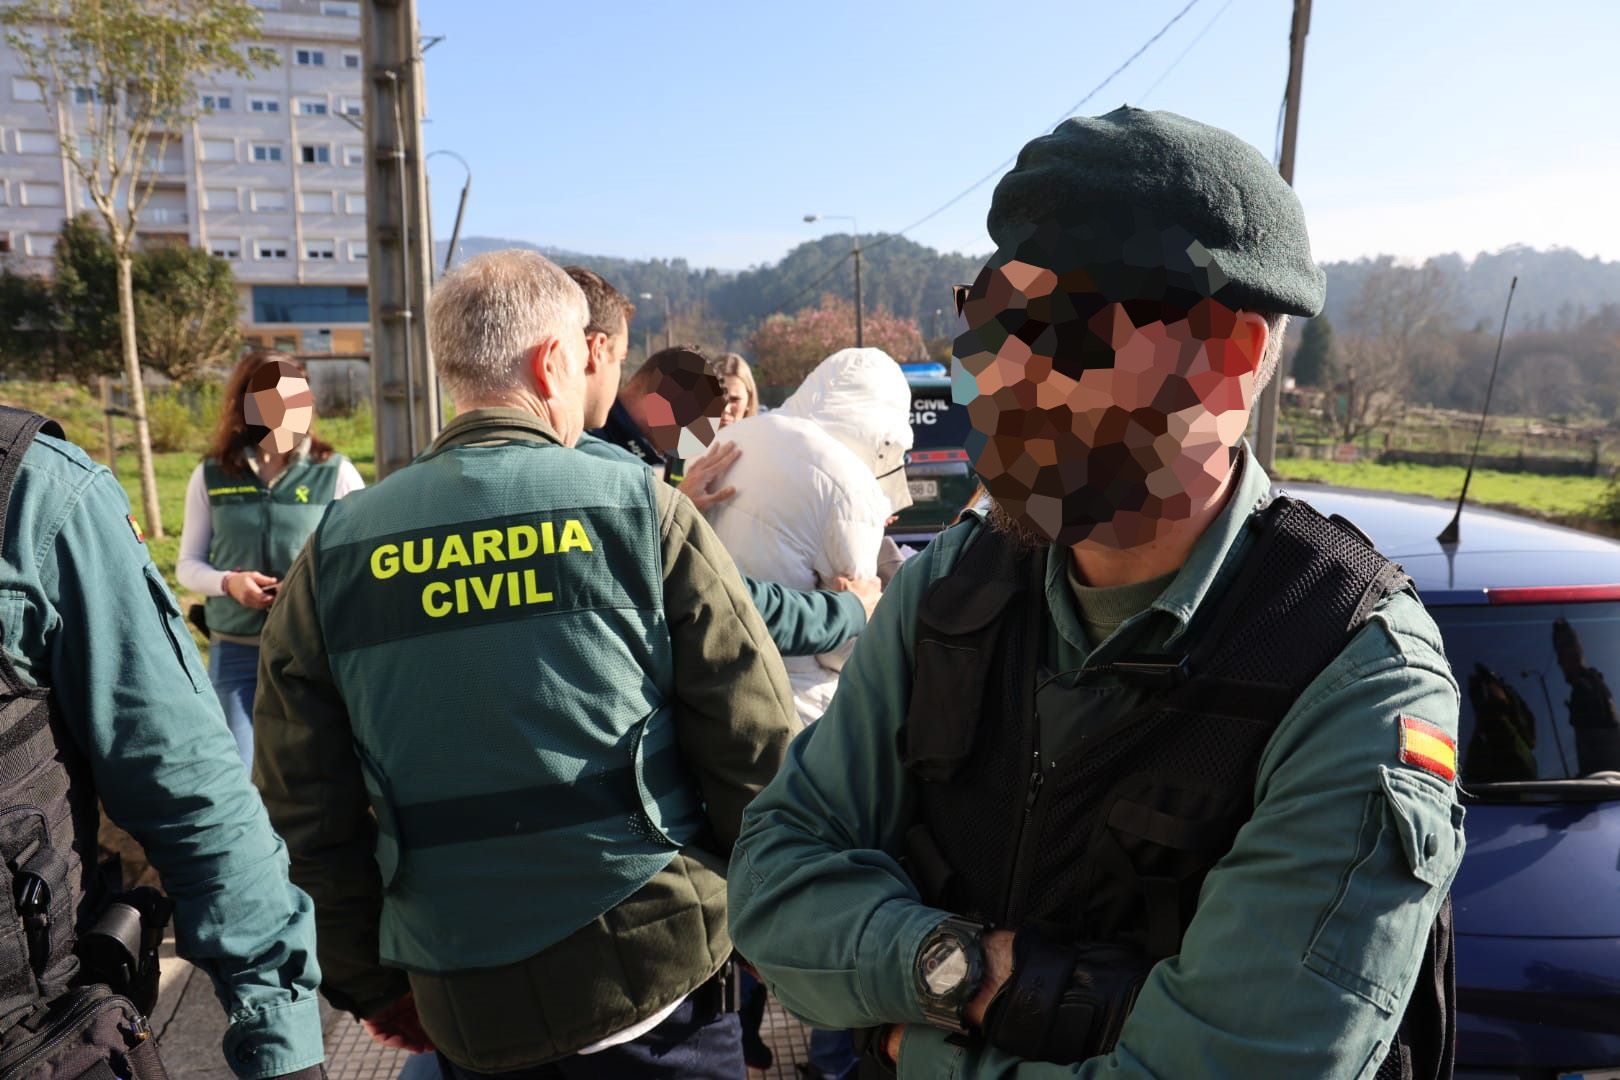 Tensión y gritos en los juzgados de Porriño contra el detenido por el crimen de Salceda: "¡Asesino!"